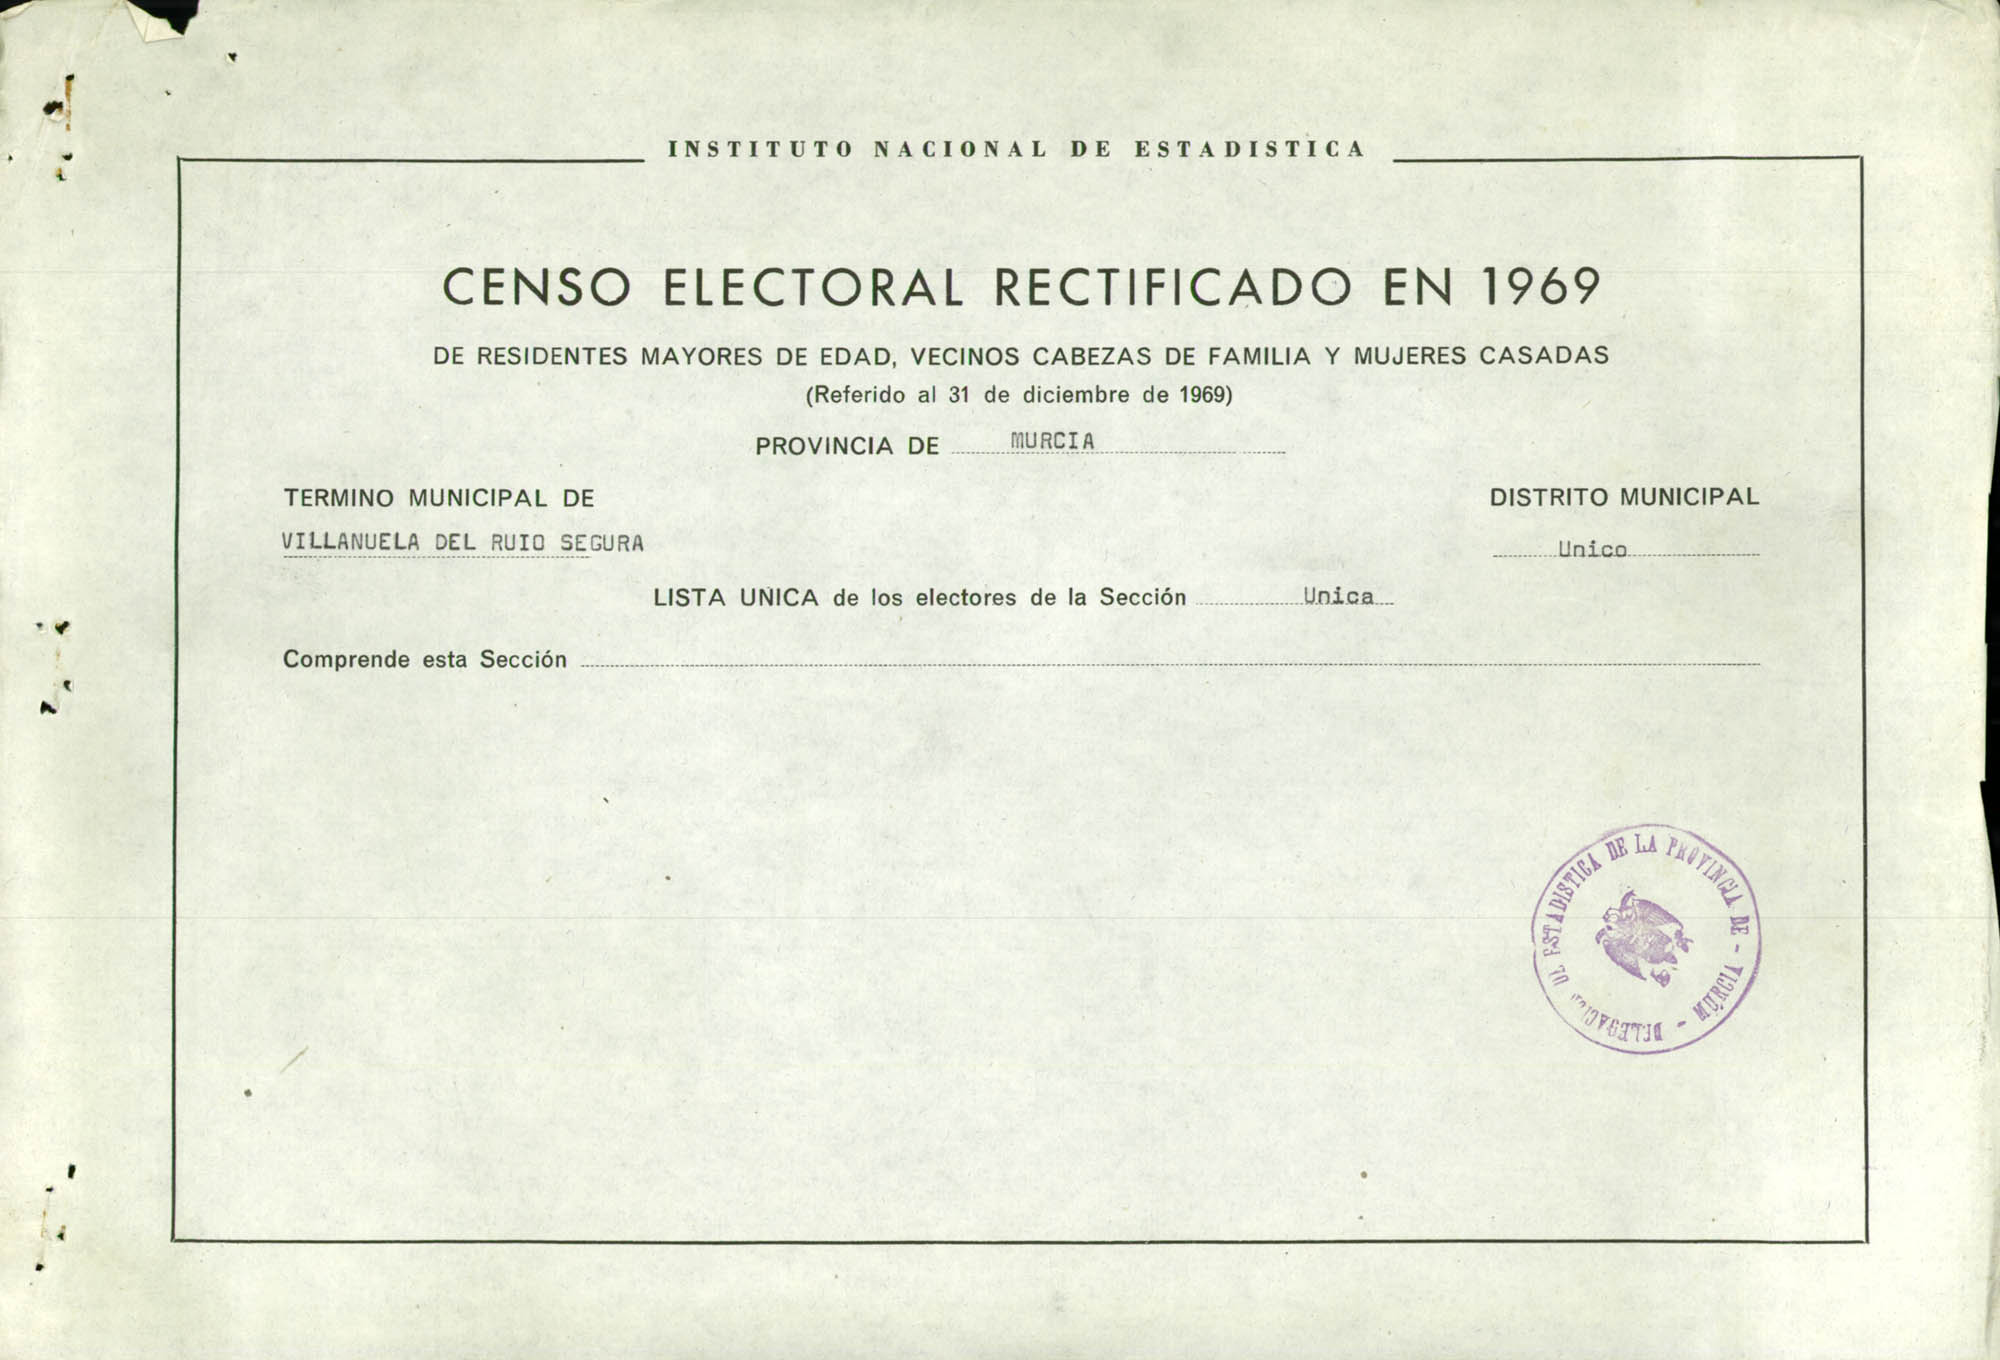 Censo electoral rectificado en 1969: listas definitivas de Villanueva del Río Segura, Distrito Única, sección única.